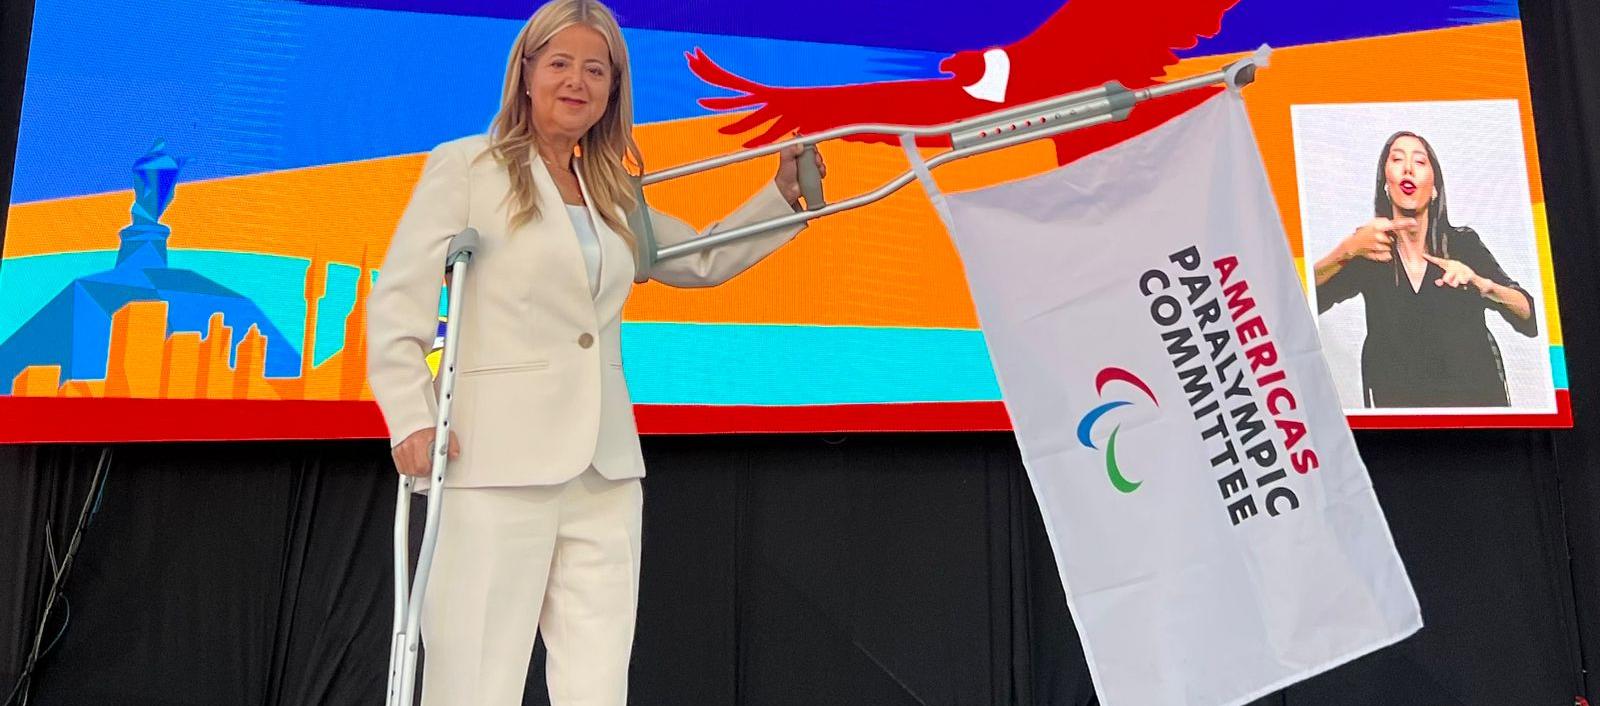 La gobernadora Elsa Noguera con la bandera de los Juegos ParaPanamericanos 2027 que se cumplirán en Barranquilla